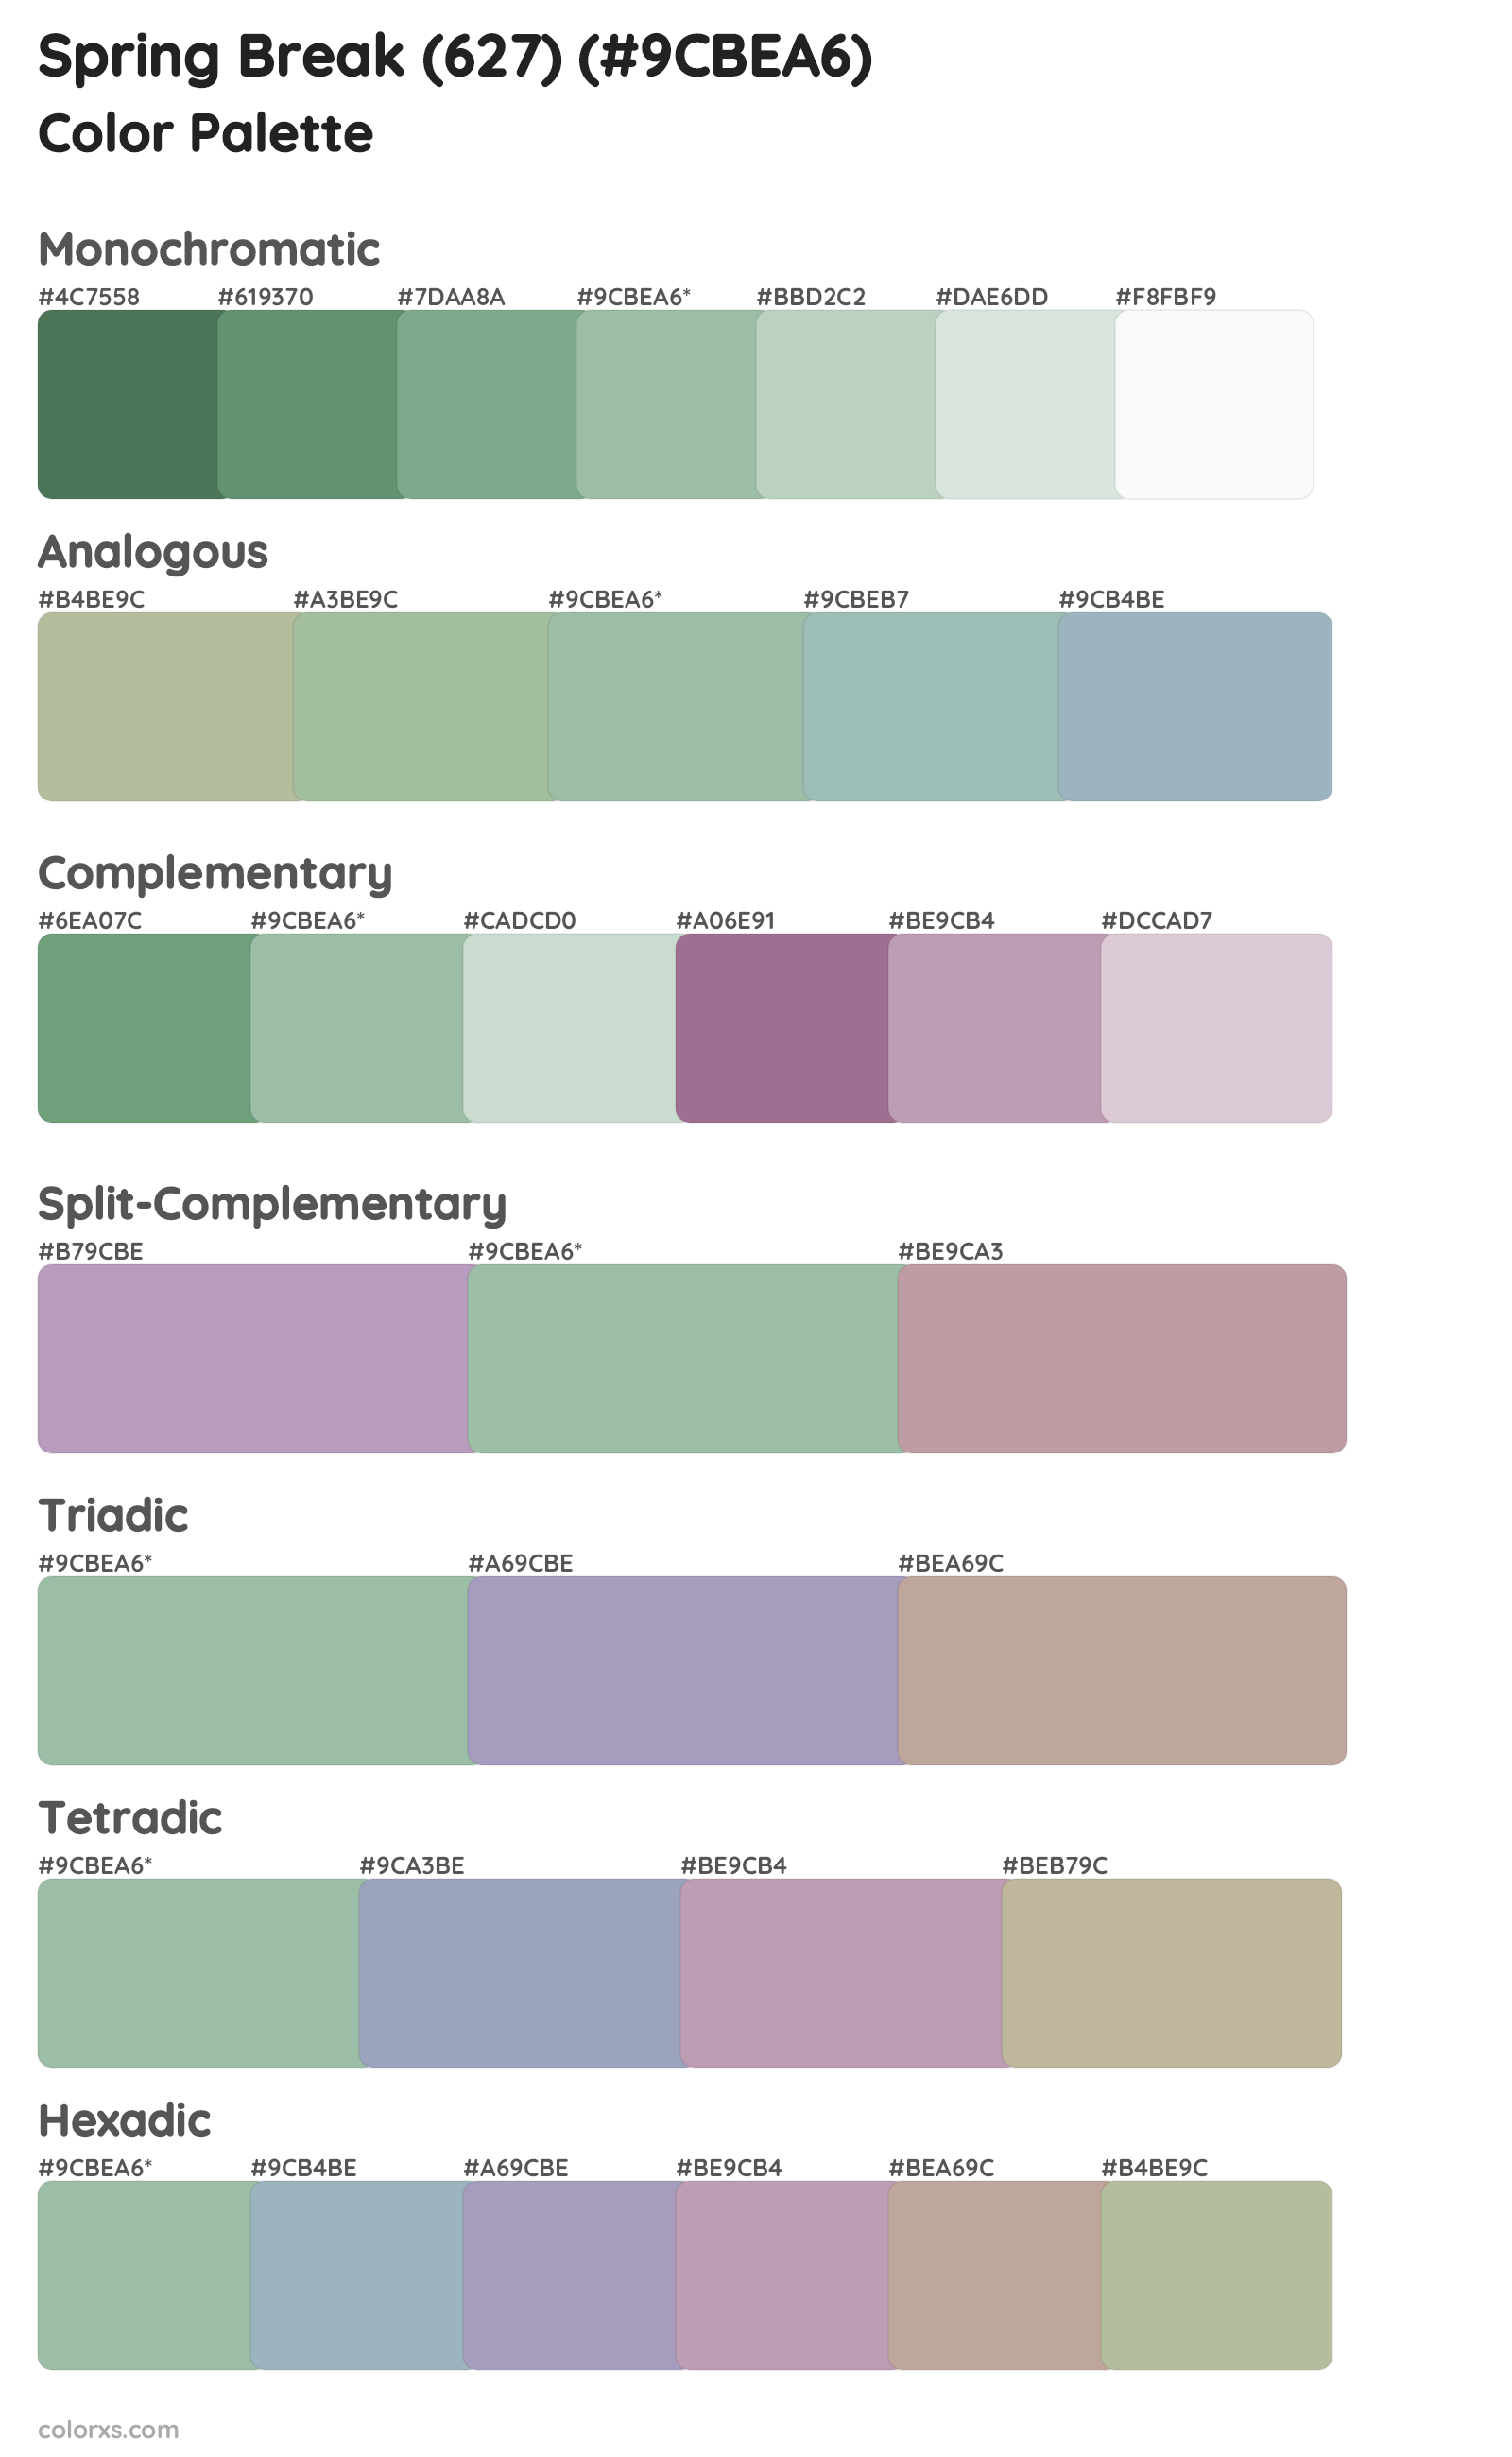 Spring Break (627) Color Scheme Palettes